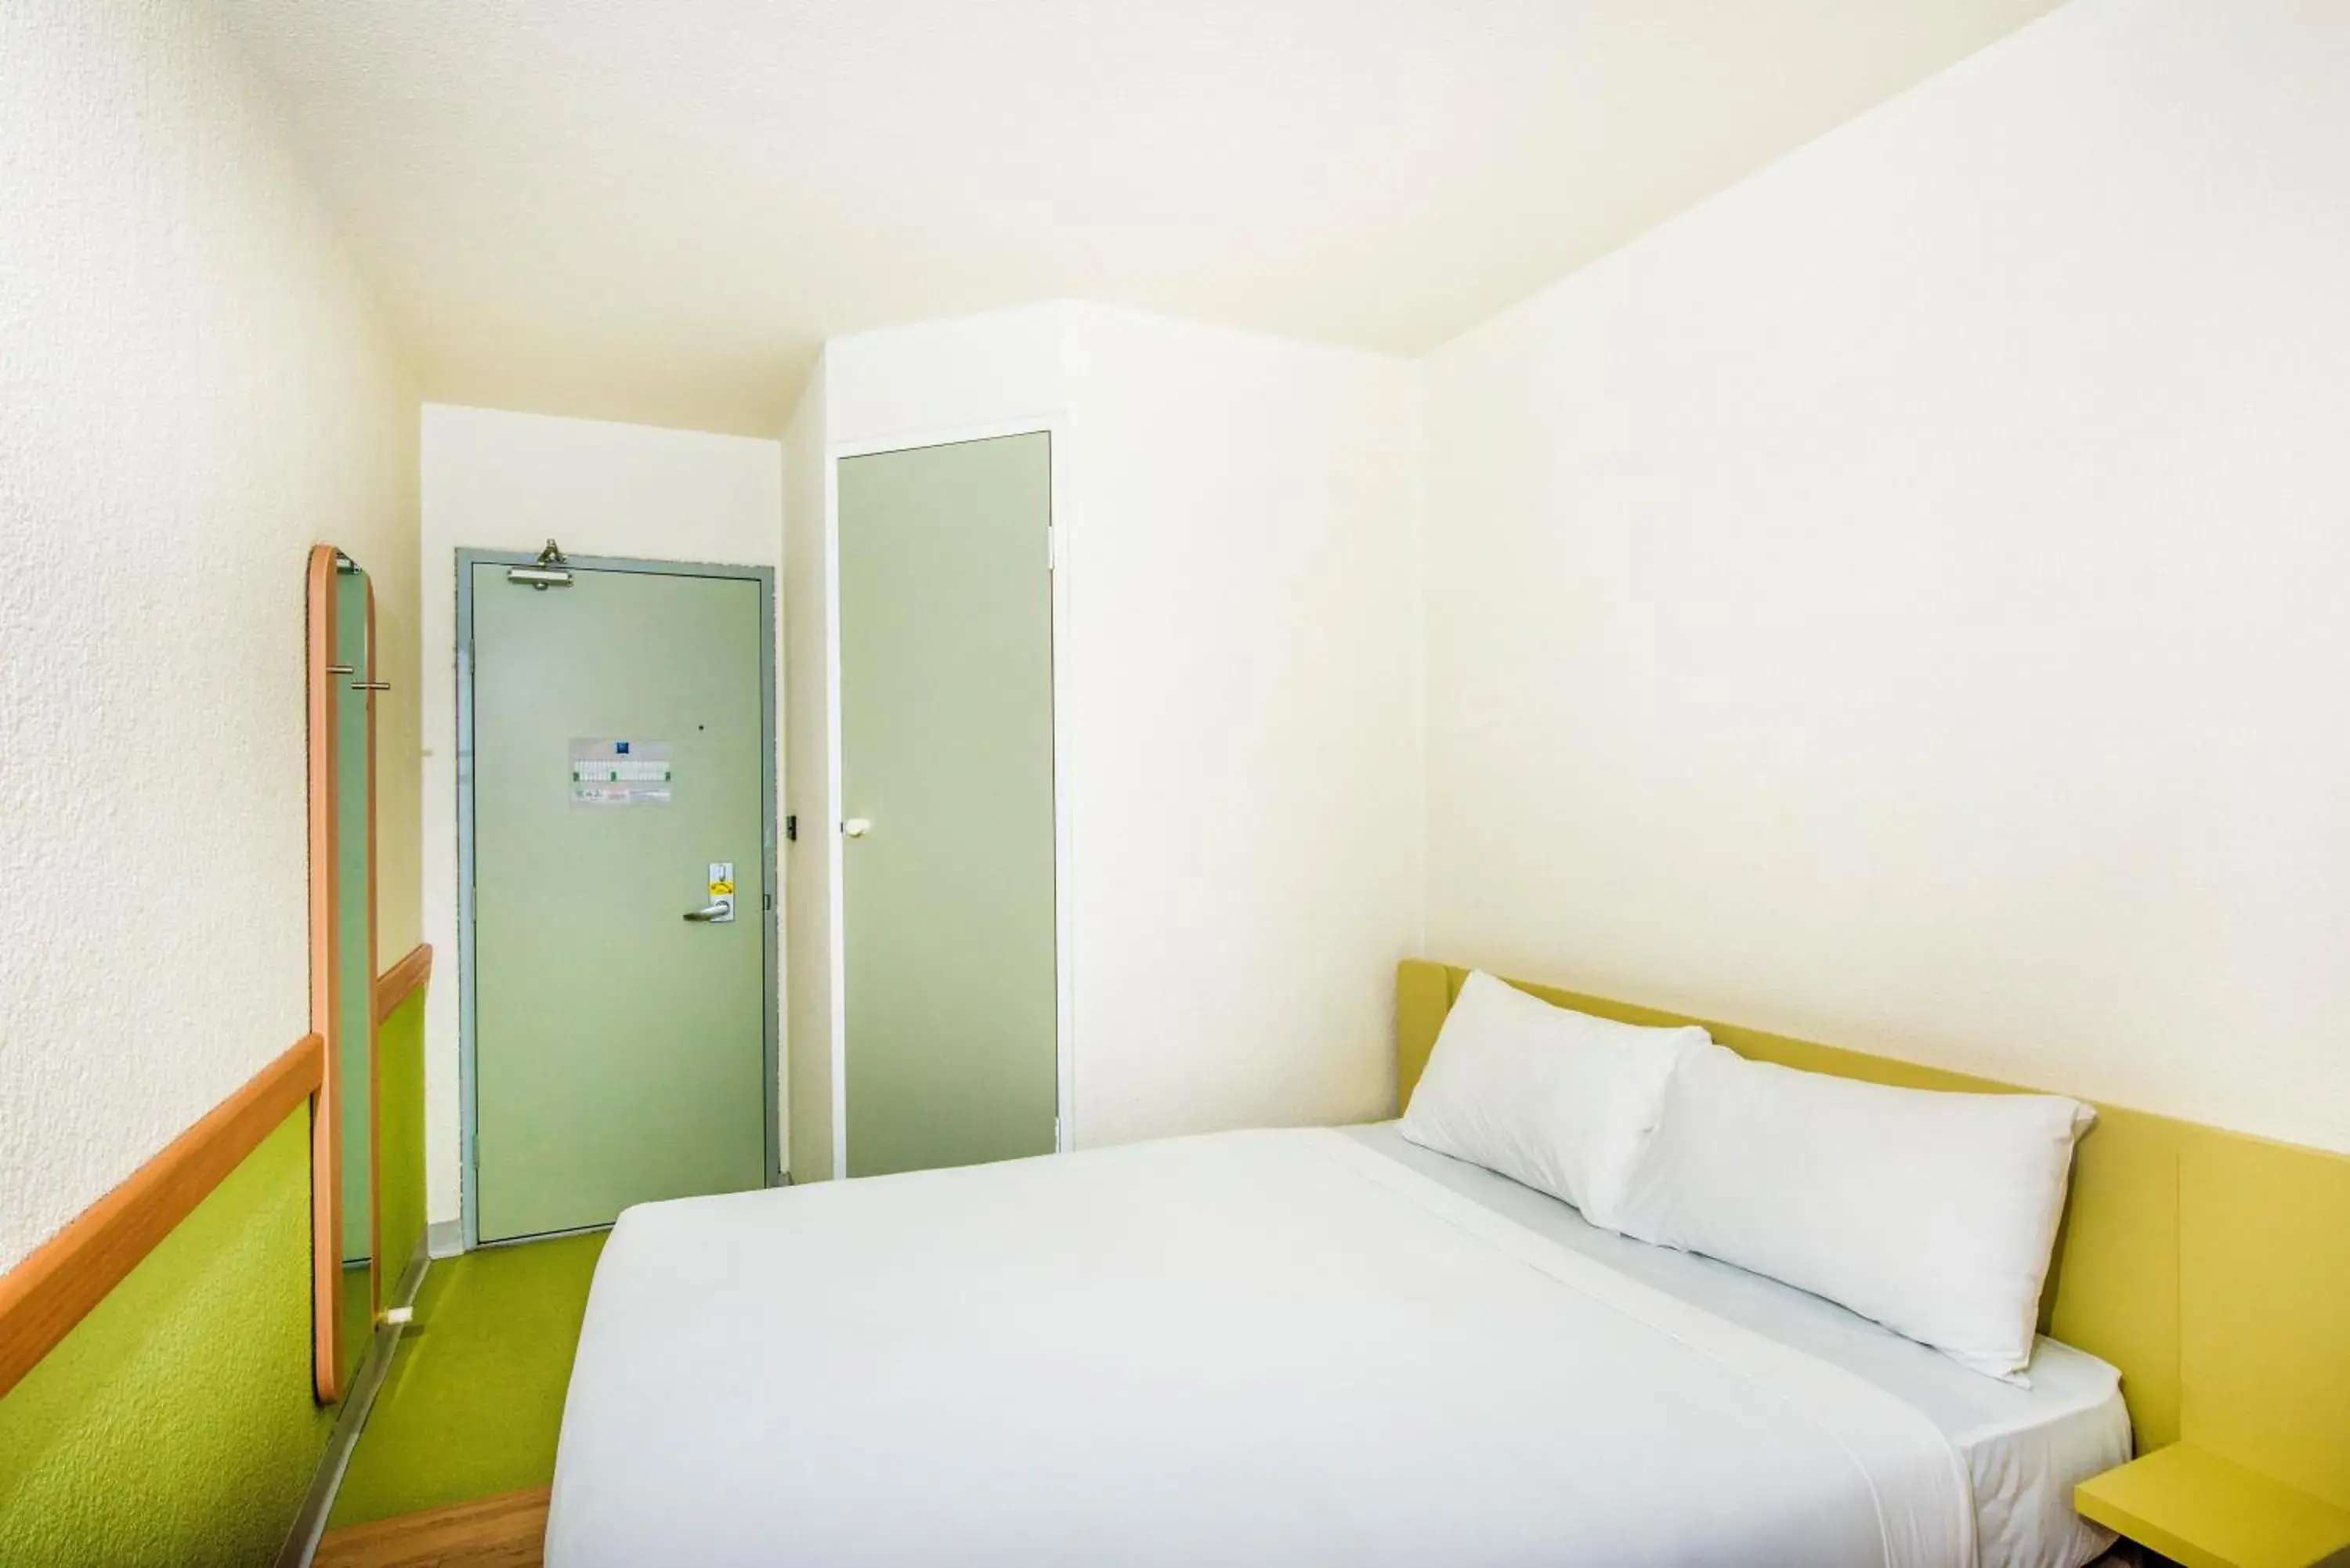 Bedroom, Room Photo in ibis Budget - Fawkner